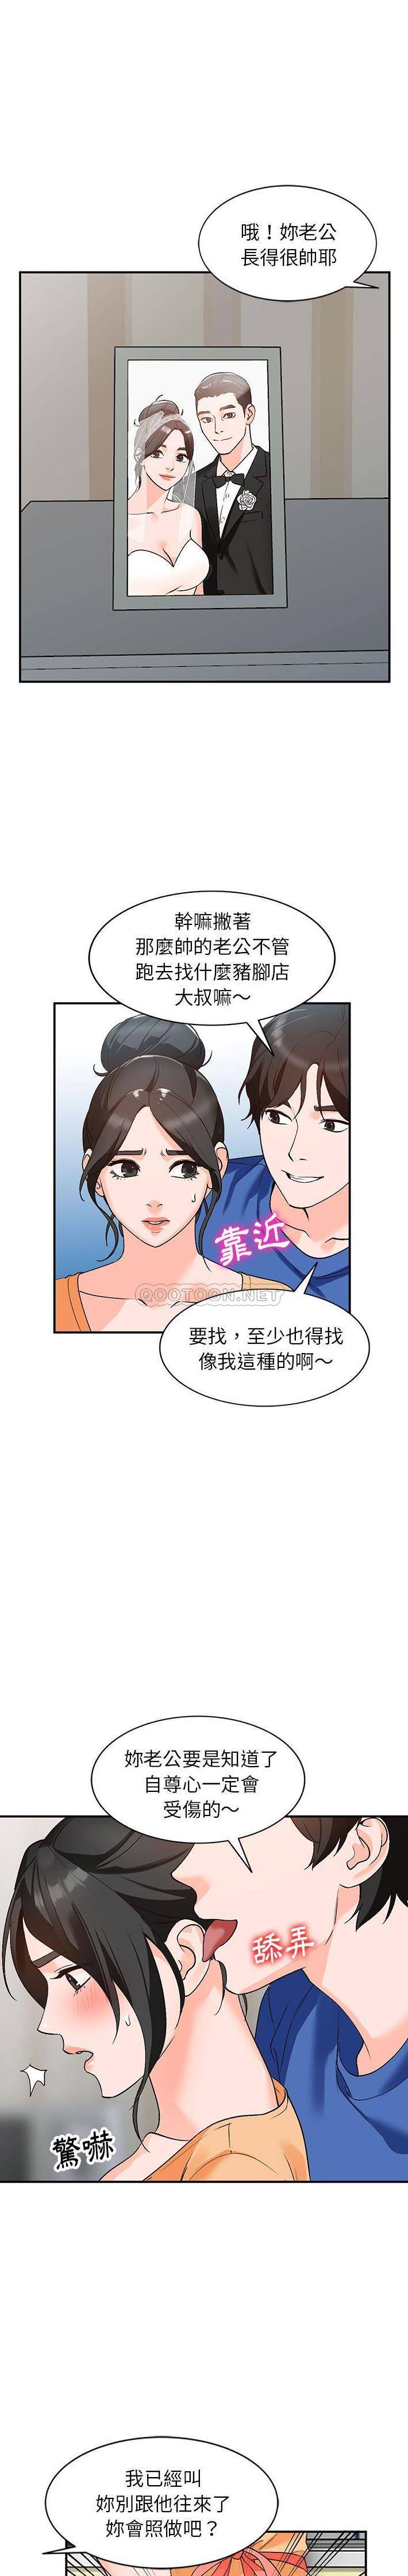 韩国污漫画 她們的小秘密(小鎮上的女人們) 第10话 7